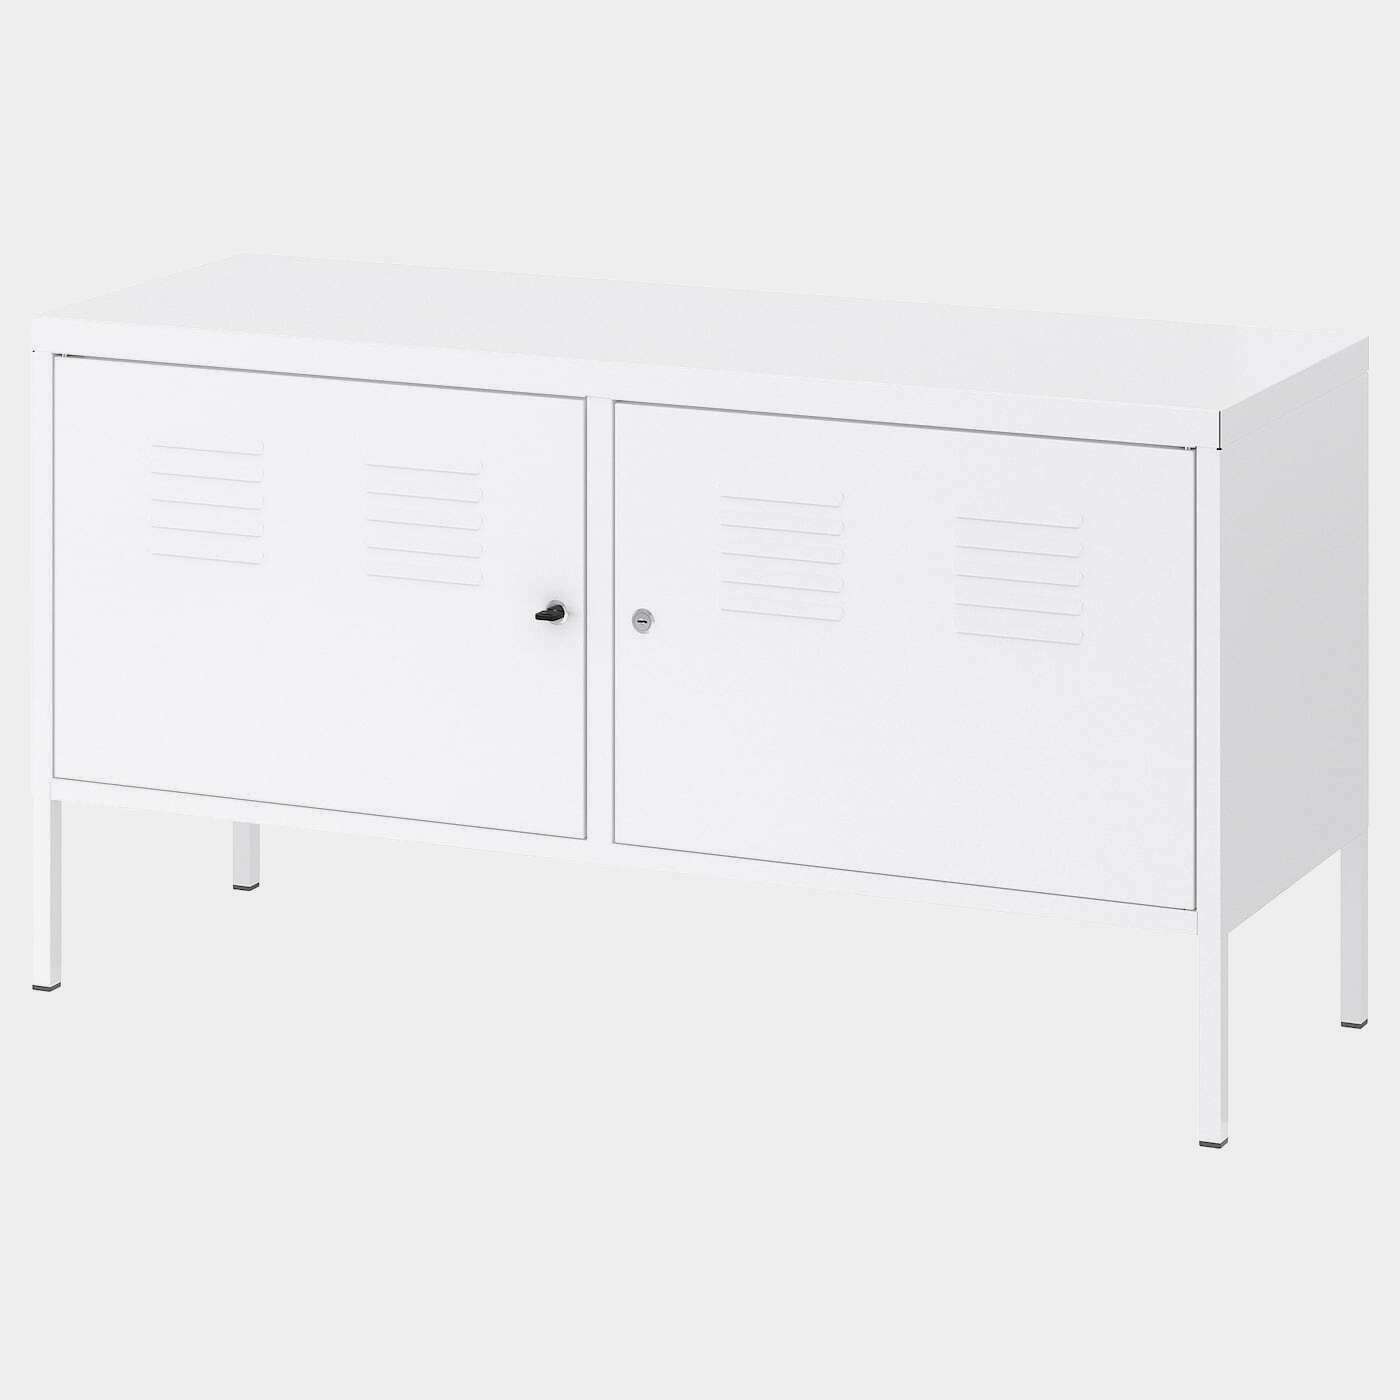 IKEA PS Schrank  - TV-Bänke - Möbel Ideen für dein Zuhause von Home Trends. Möbel Trends von Social Media Influencer für dein Skandi Zuhause.